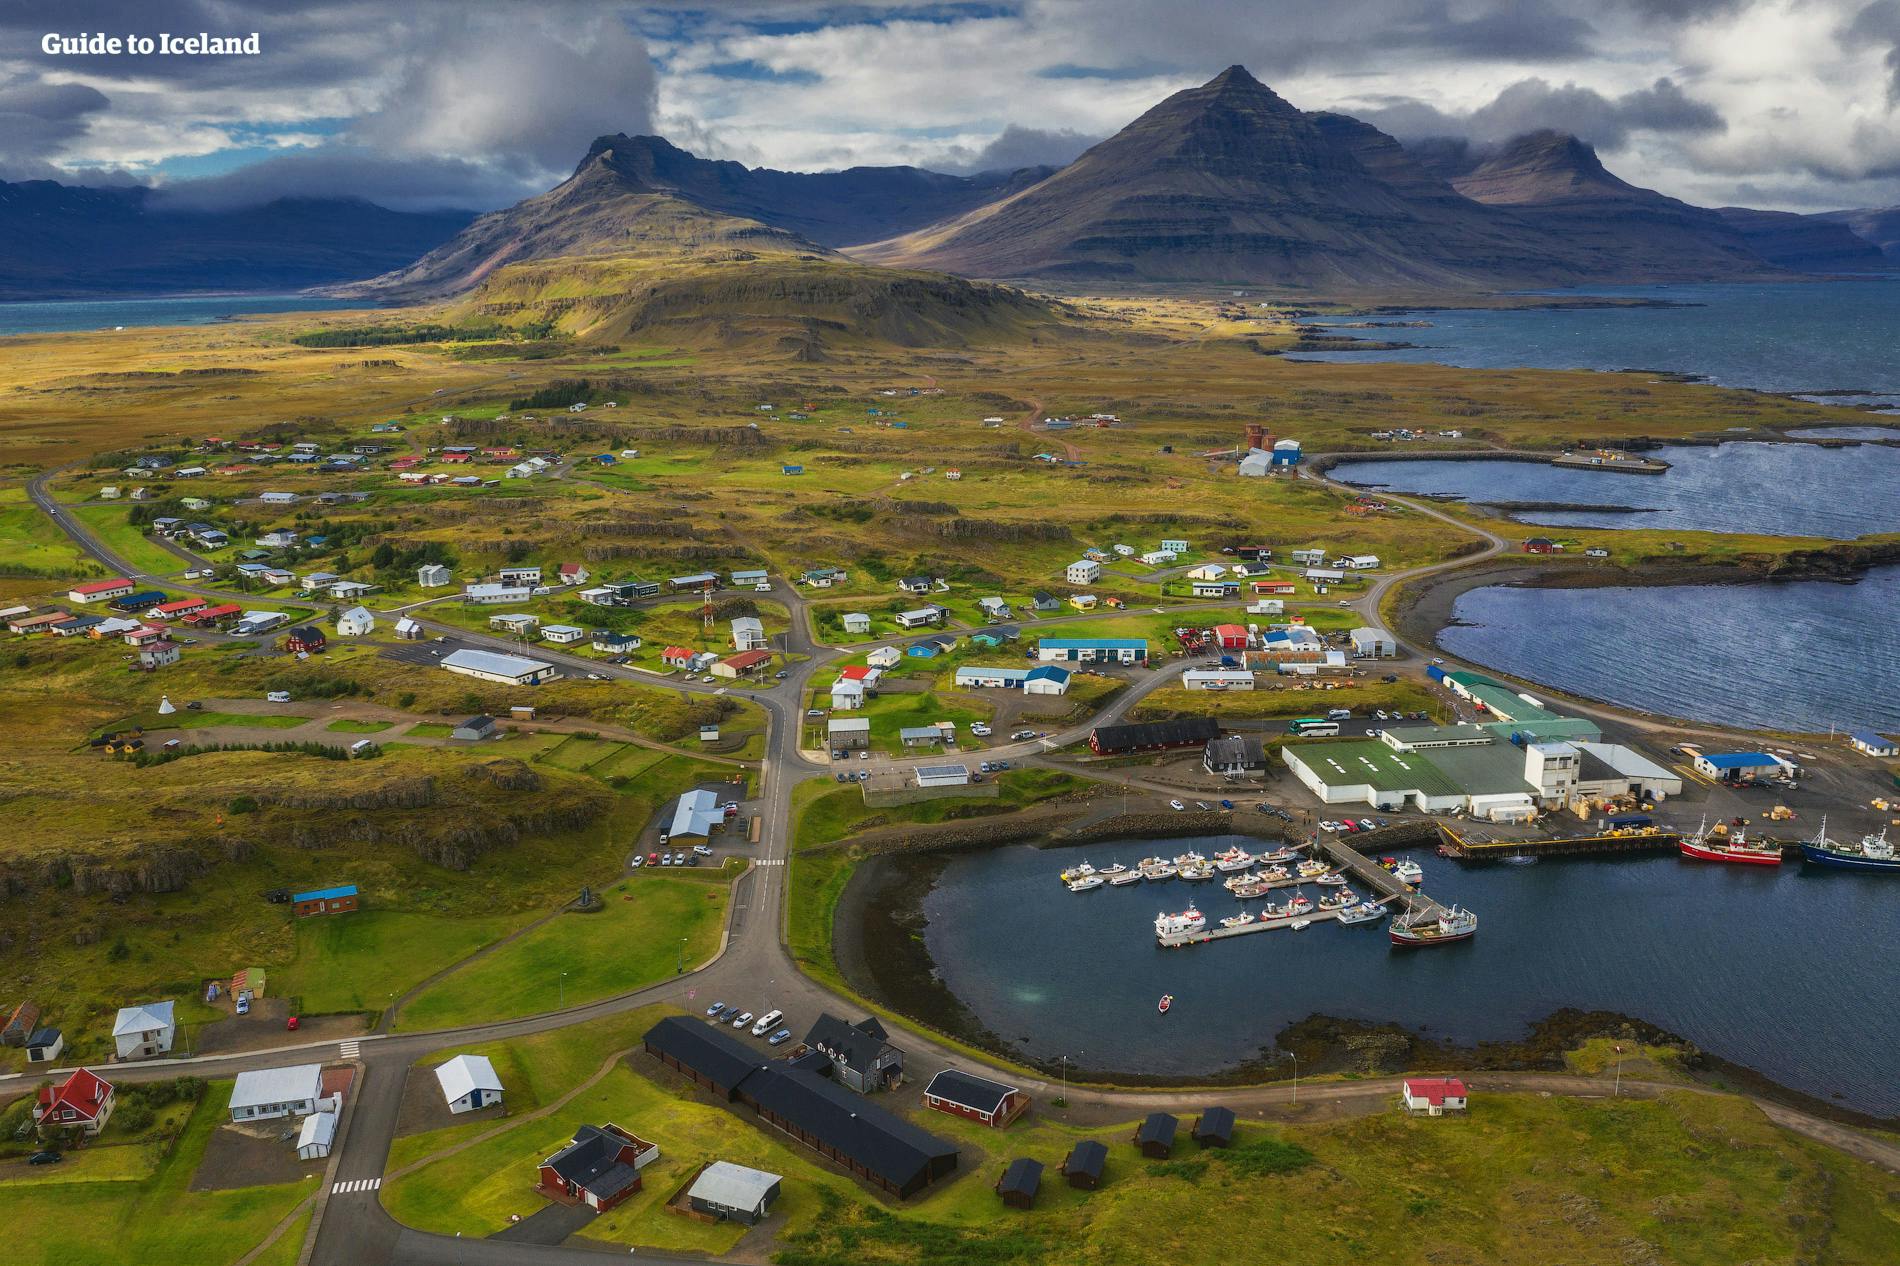 Nell'Islanda orientale, vedrai meraviglie naturali e scenari mozzafiato in qualsiasi angolo.